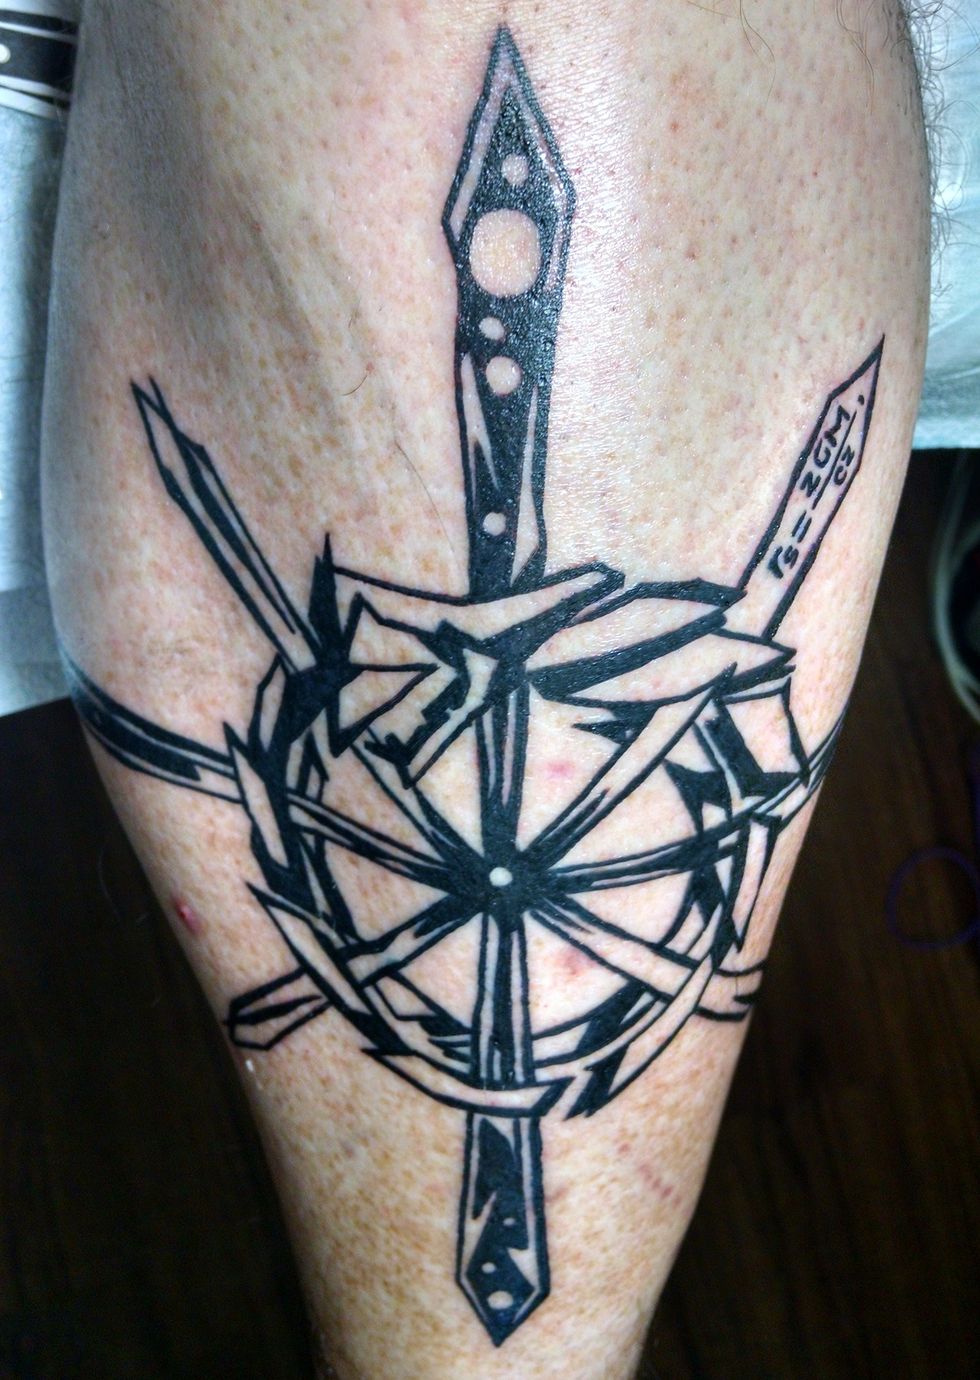 Tatuaggio, braccio, spalla, articolazione, muscolo, gamba umana, simbolo, tatuaggio temporaneo, pugnale, carne, 